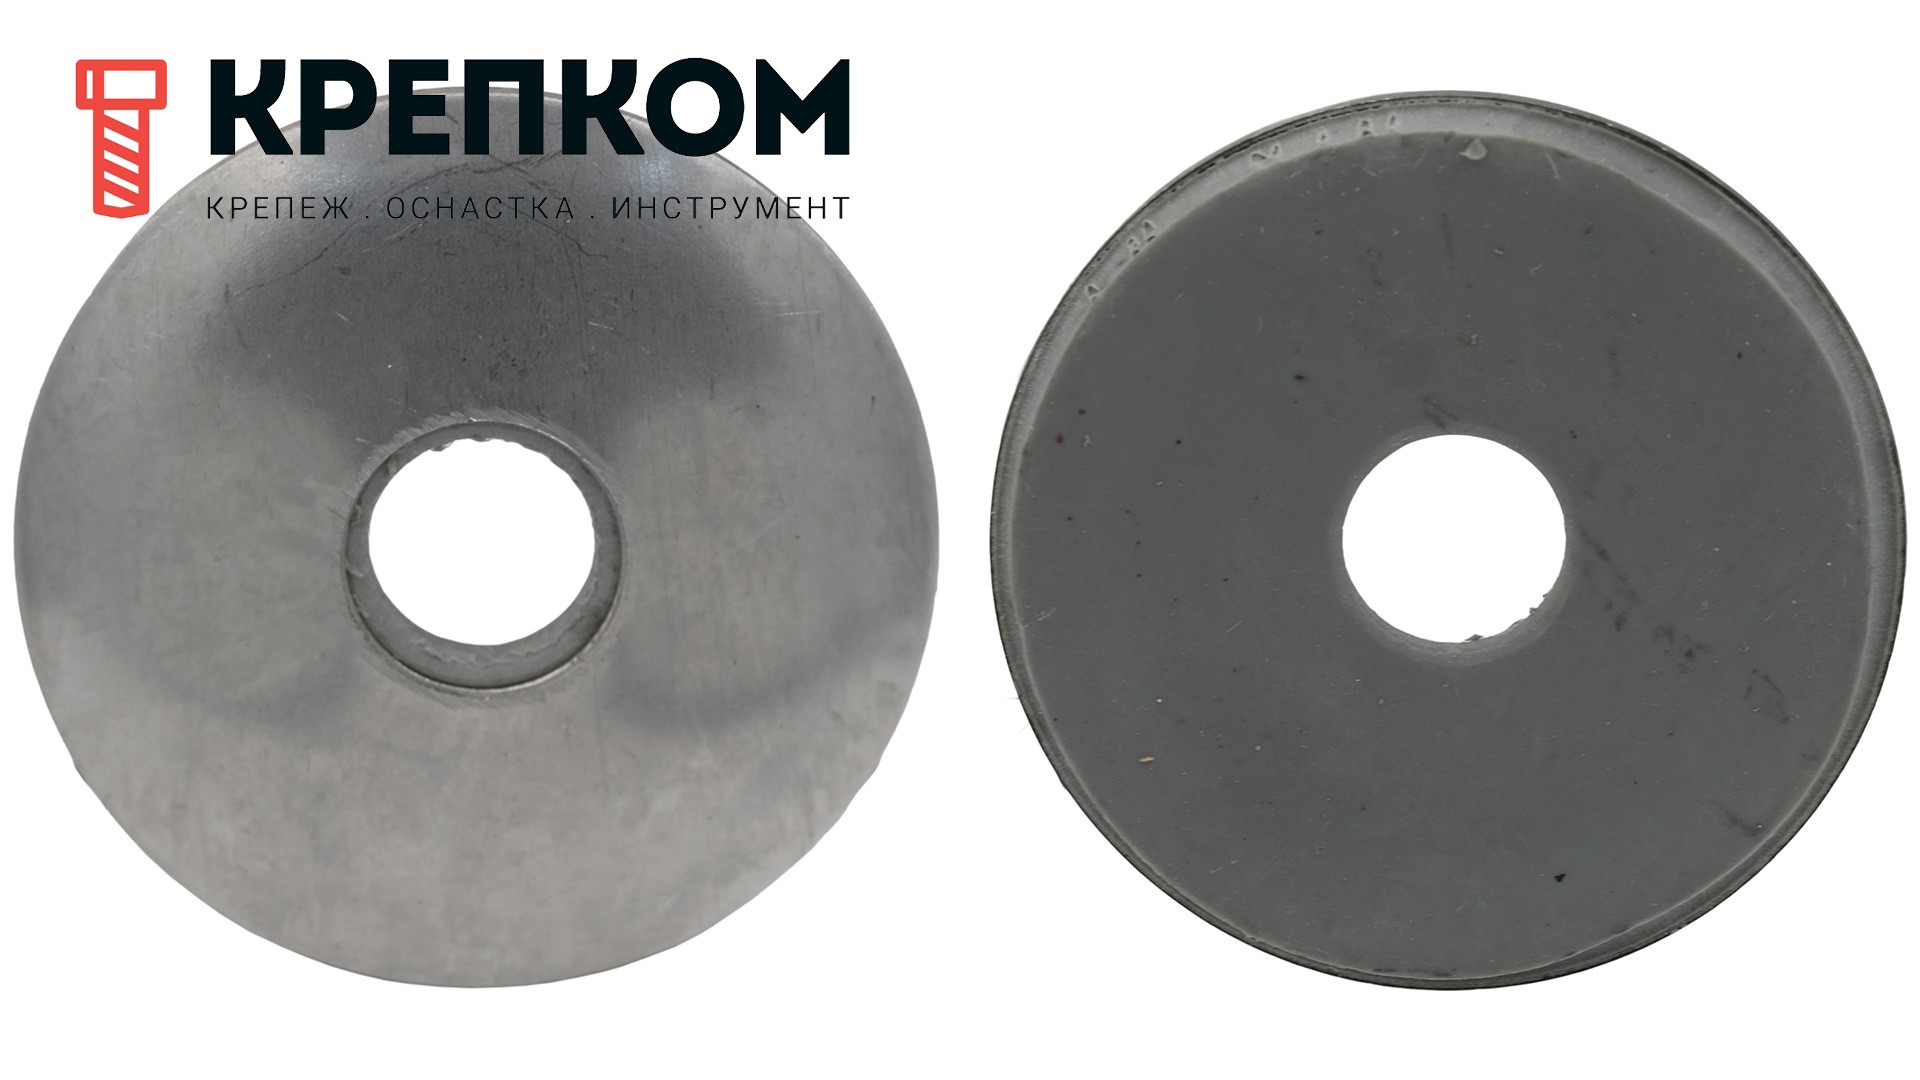 Шайба кровельная с резиновой прокладкой EPDM 4,8х12 мм WS 9260 (9055), нержавеющая сталь А2 - фото